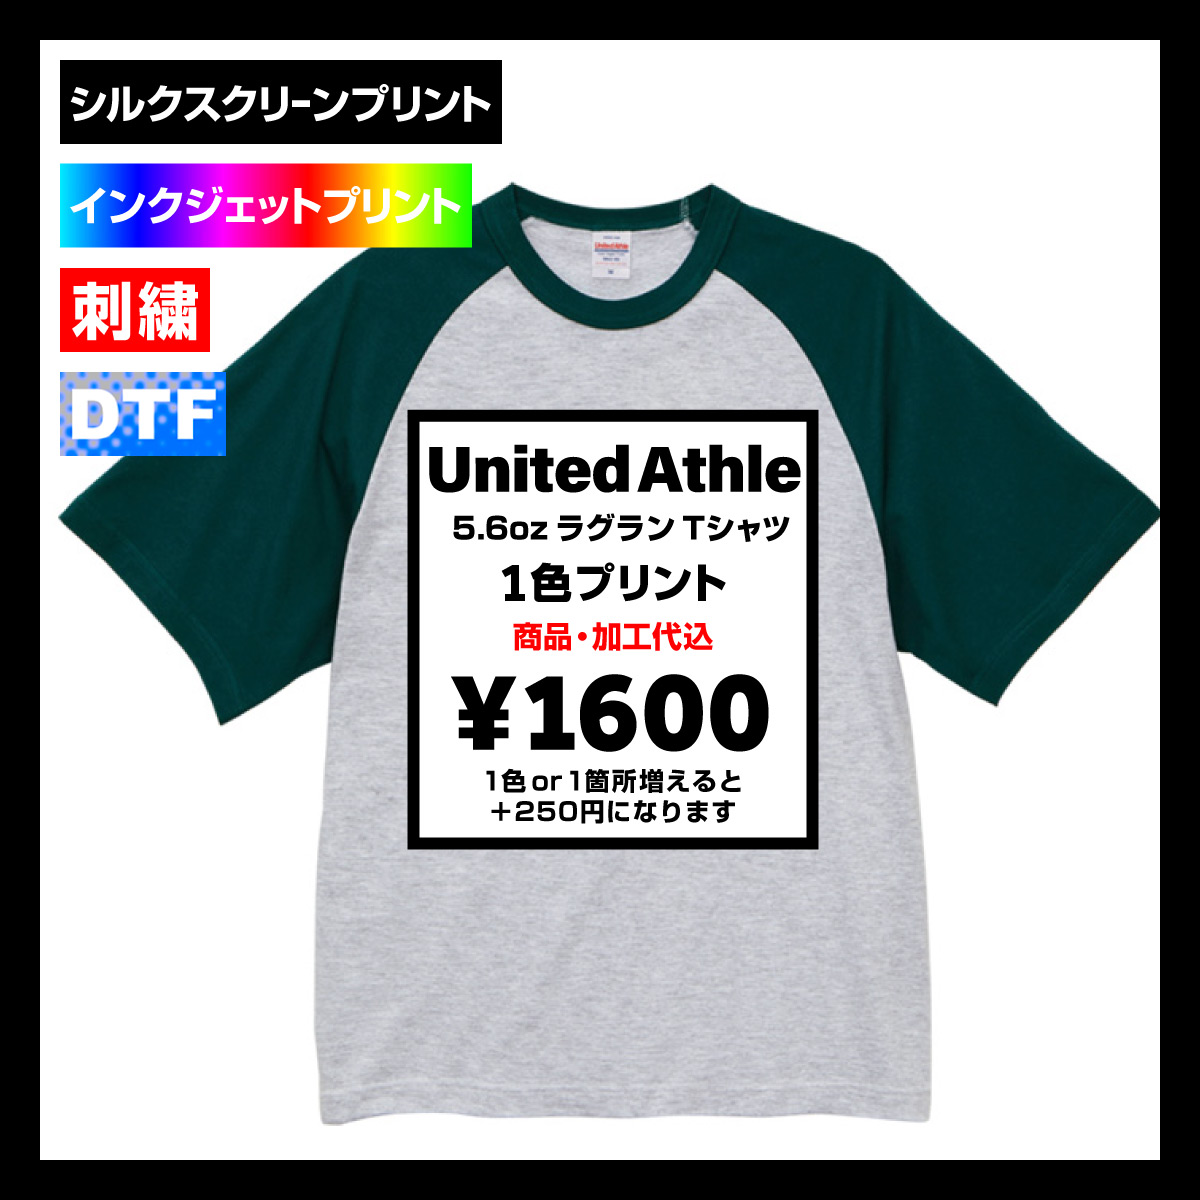 United Athle ユナイテッドアスレ 5.6oz ラグラン Tシャツ (品番5041-01)